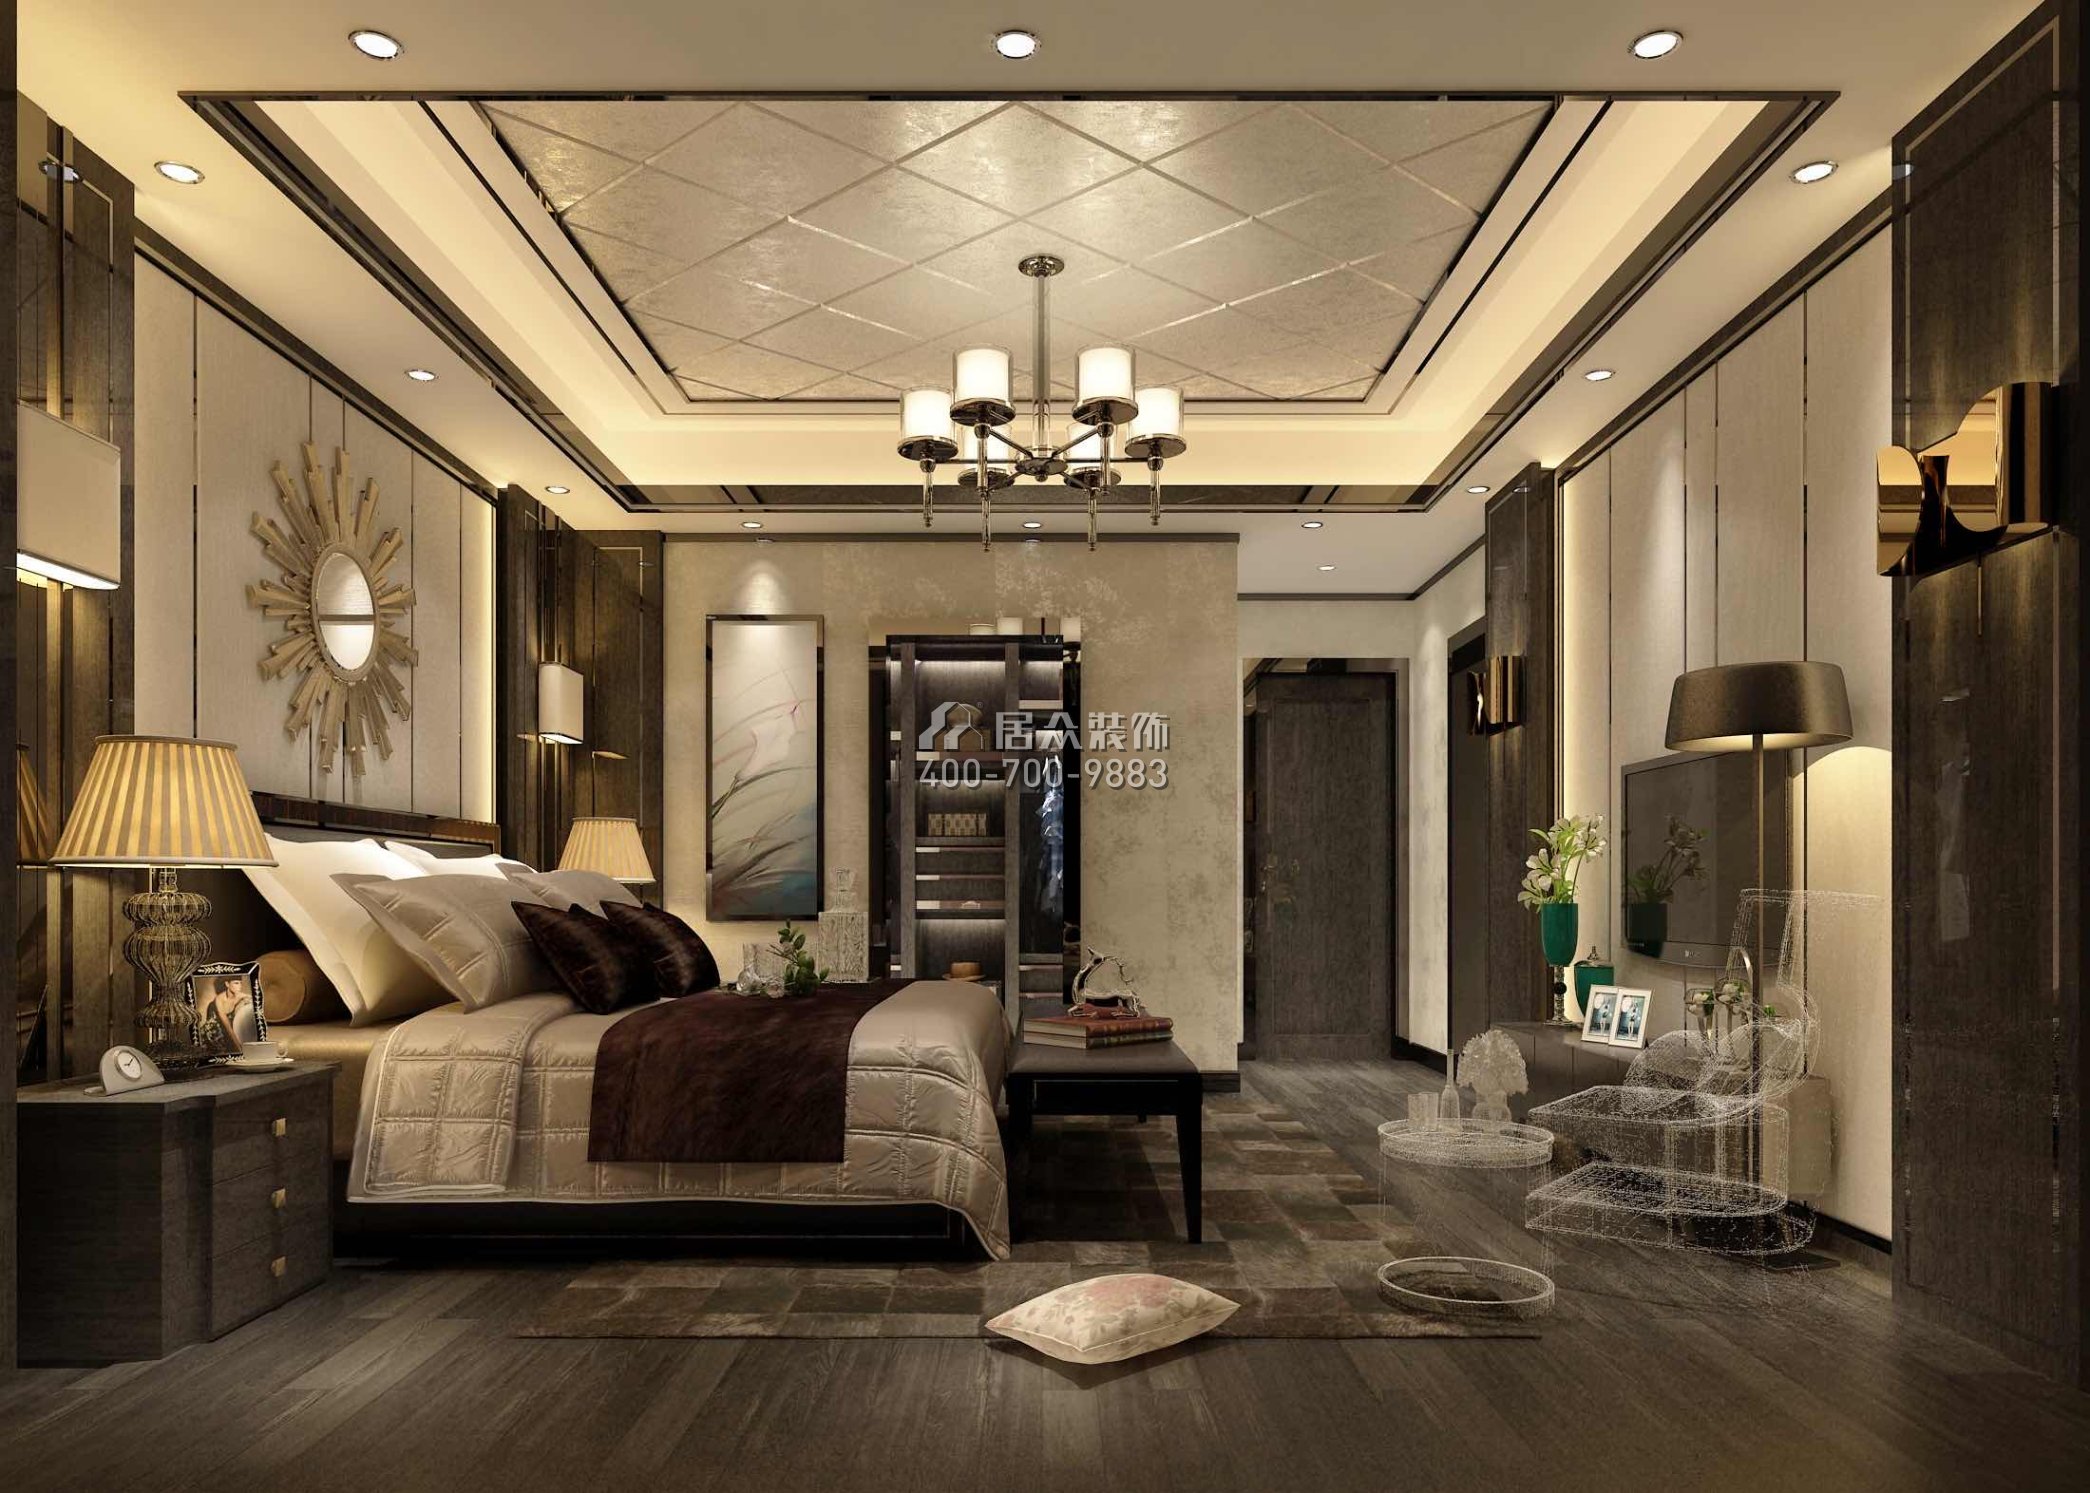 山语清晖218平方米新古典风格平层户型卧室装修效果图